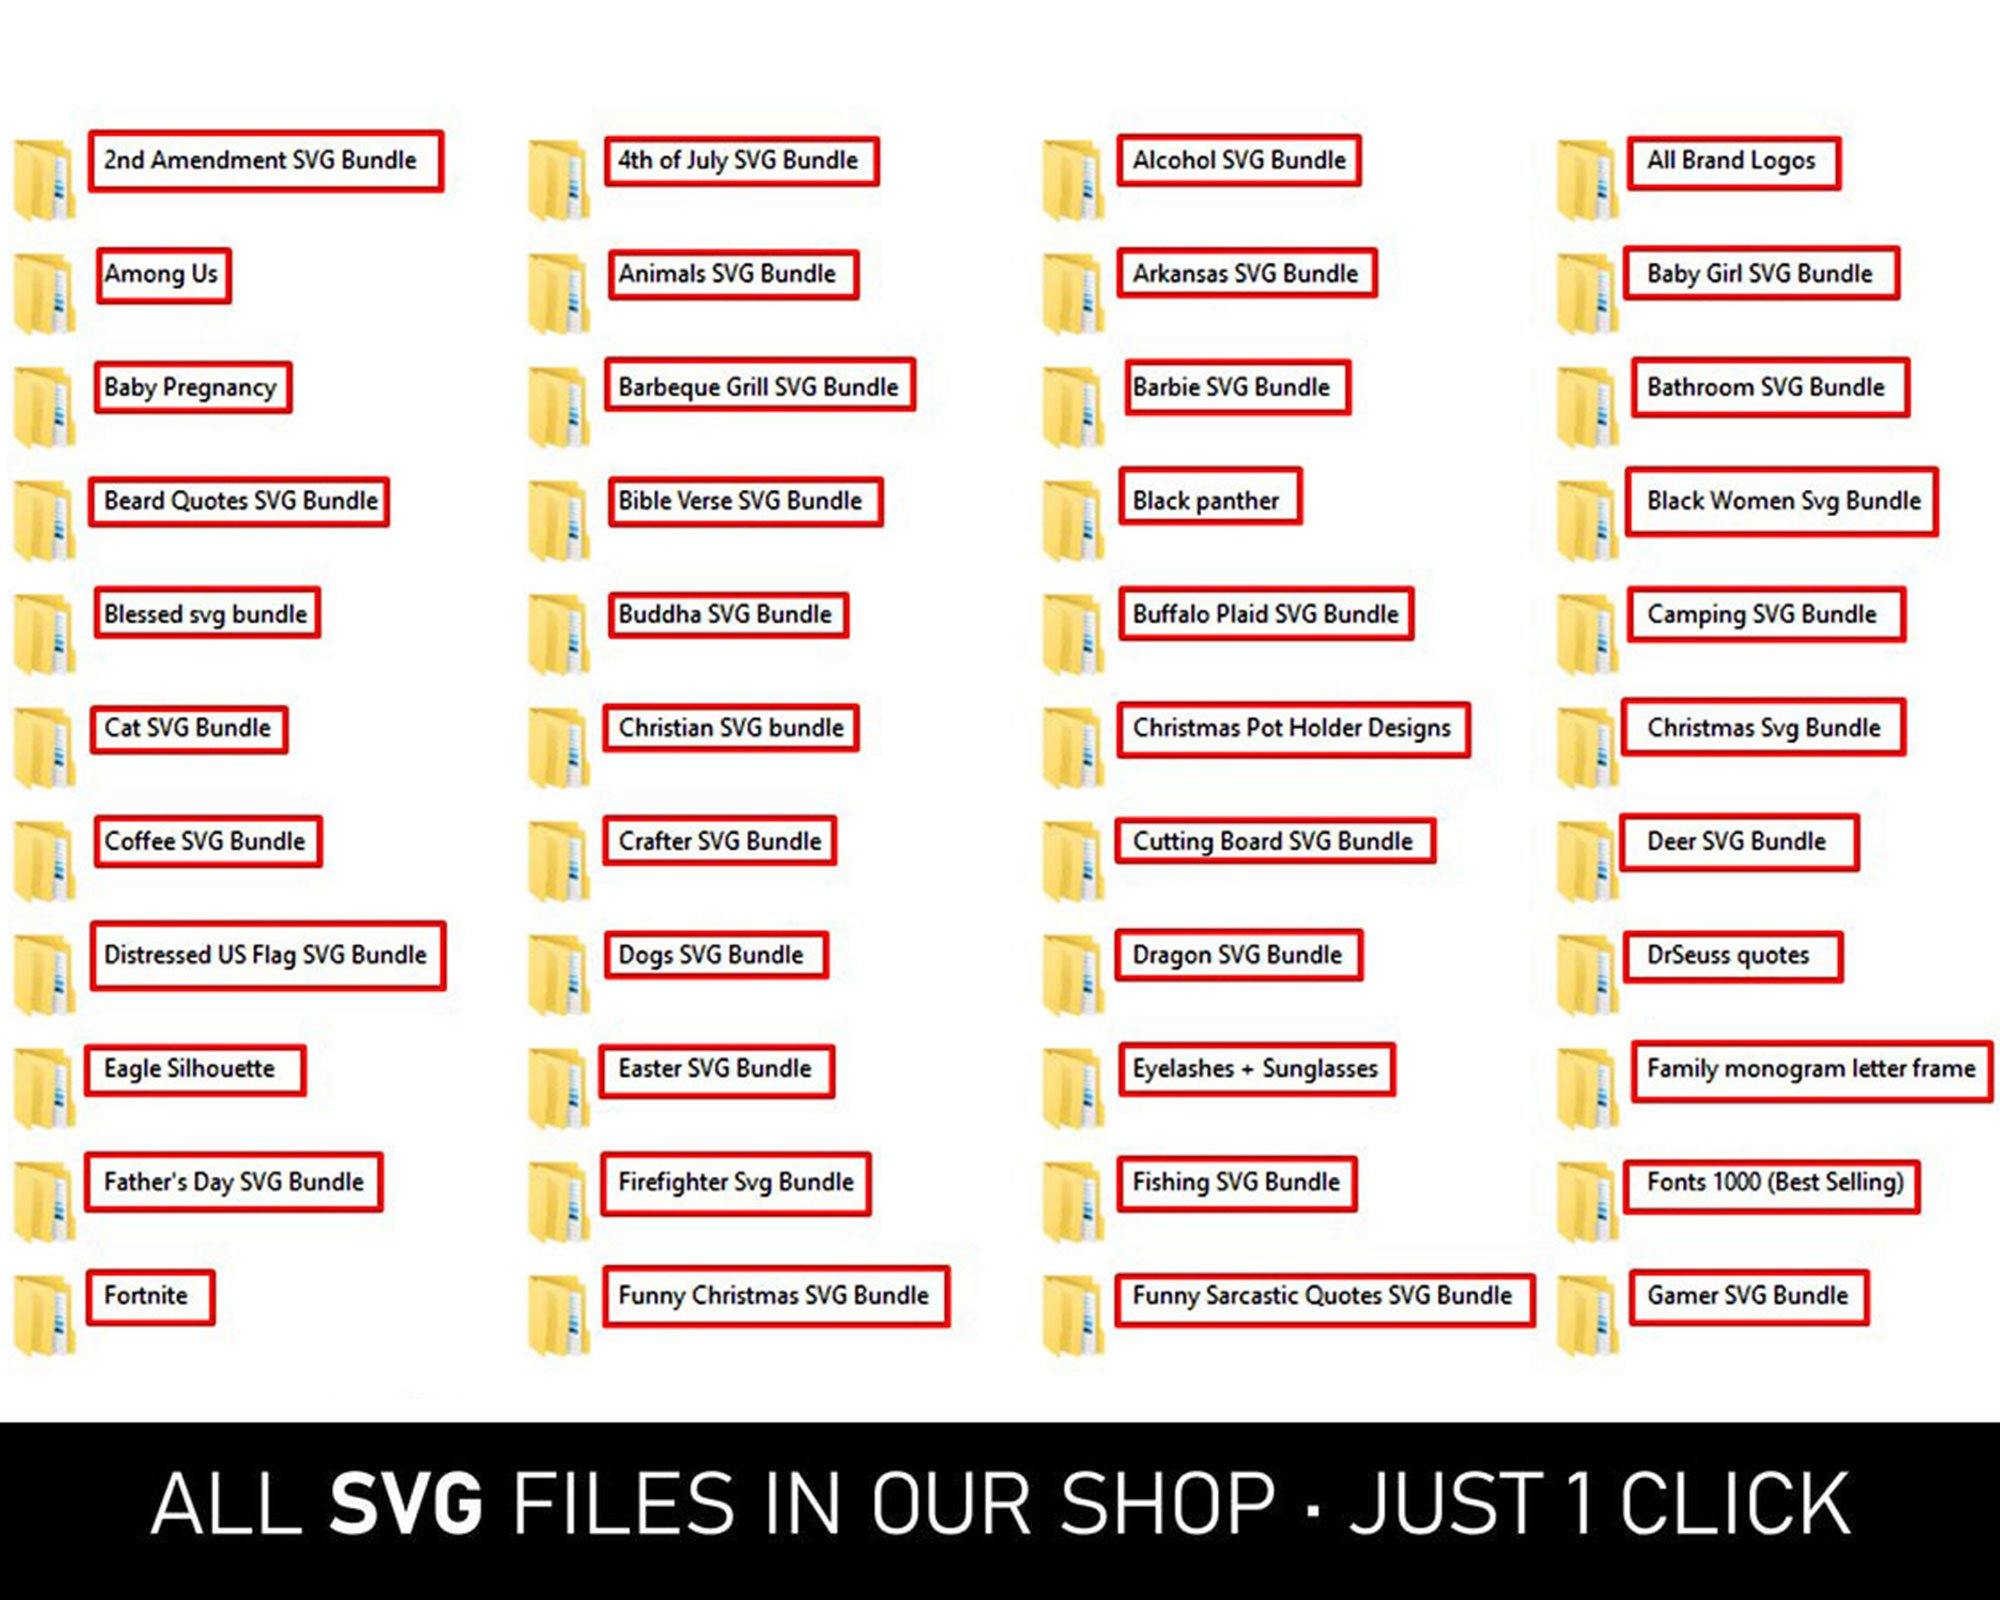 Download Over 2000 Best Selling Svg Design Bundles In This Shop Editable Svg File